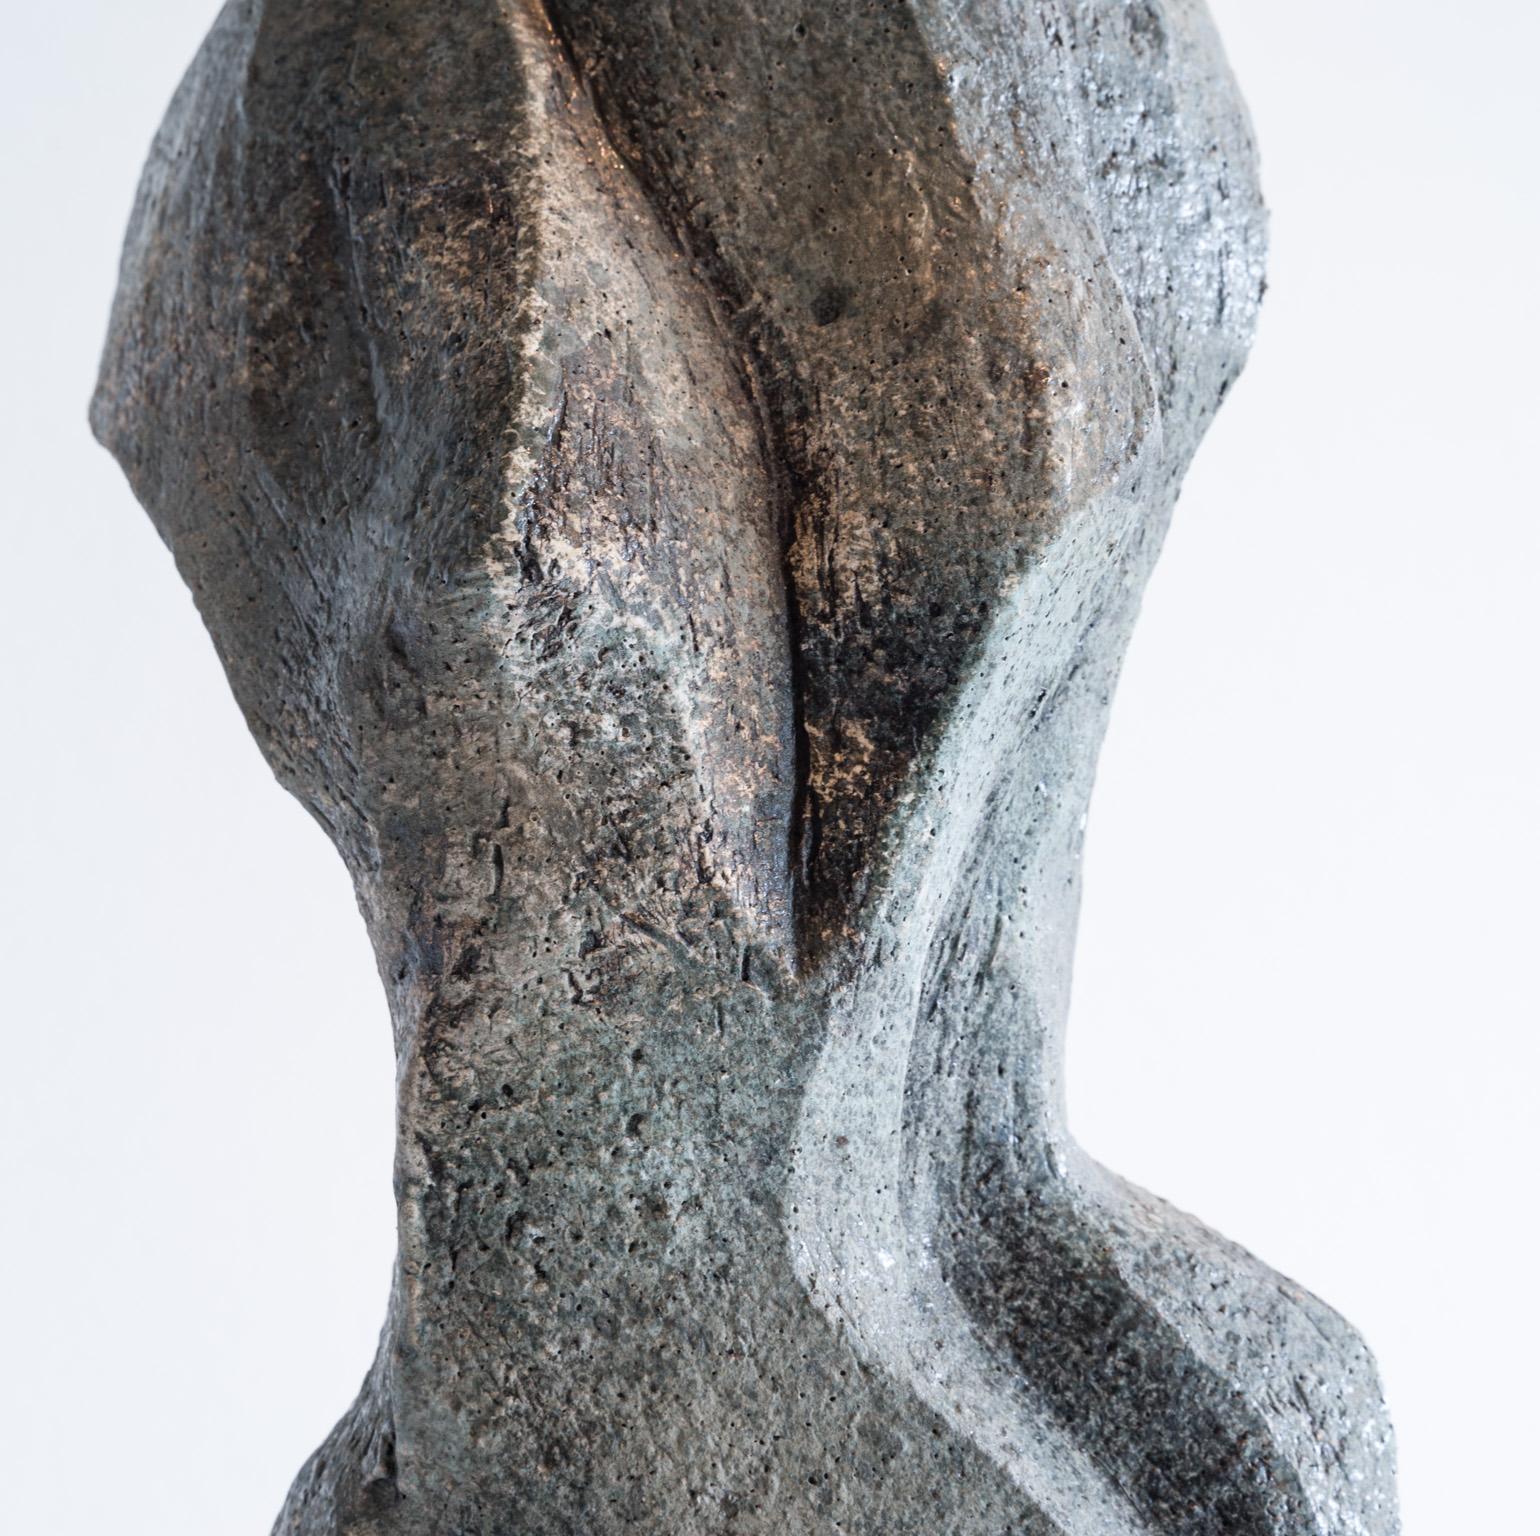 Grandeur - Sculpture by Sheila Ganch